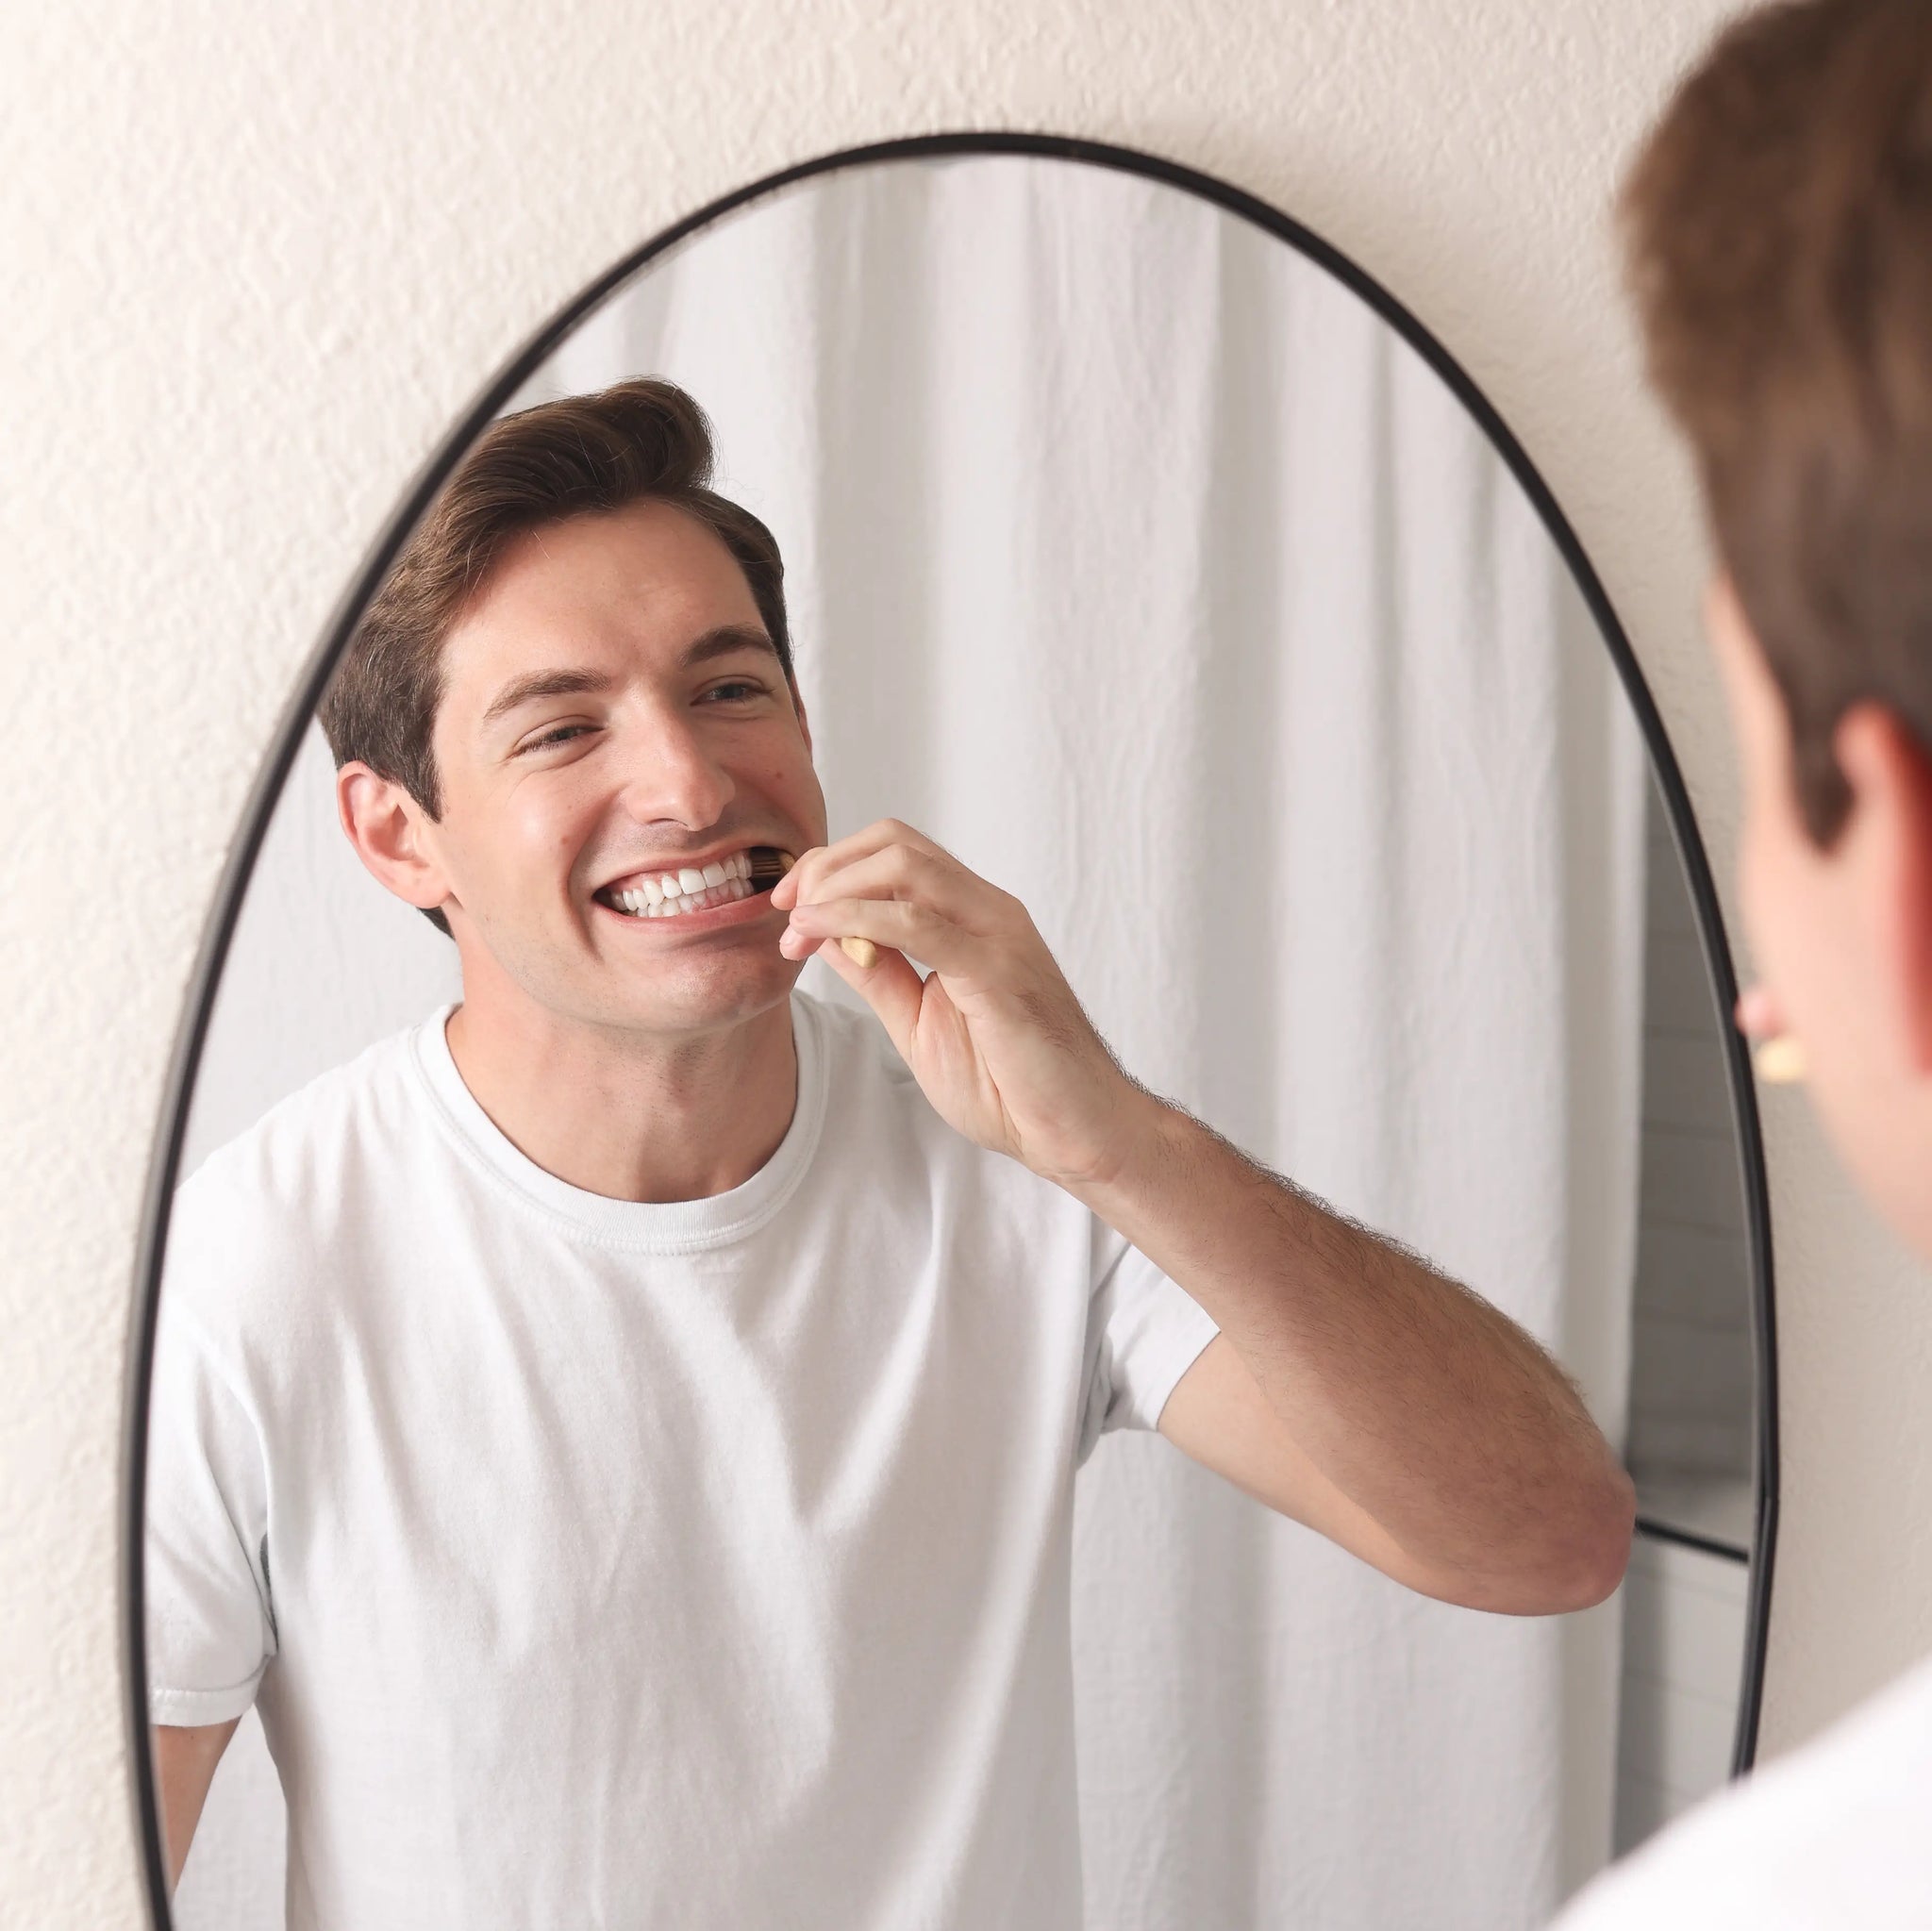 man brushing teeth with Wonder bamboo toothbrush